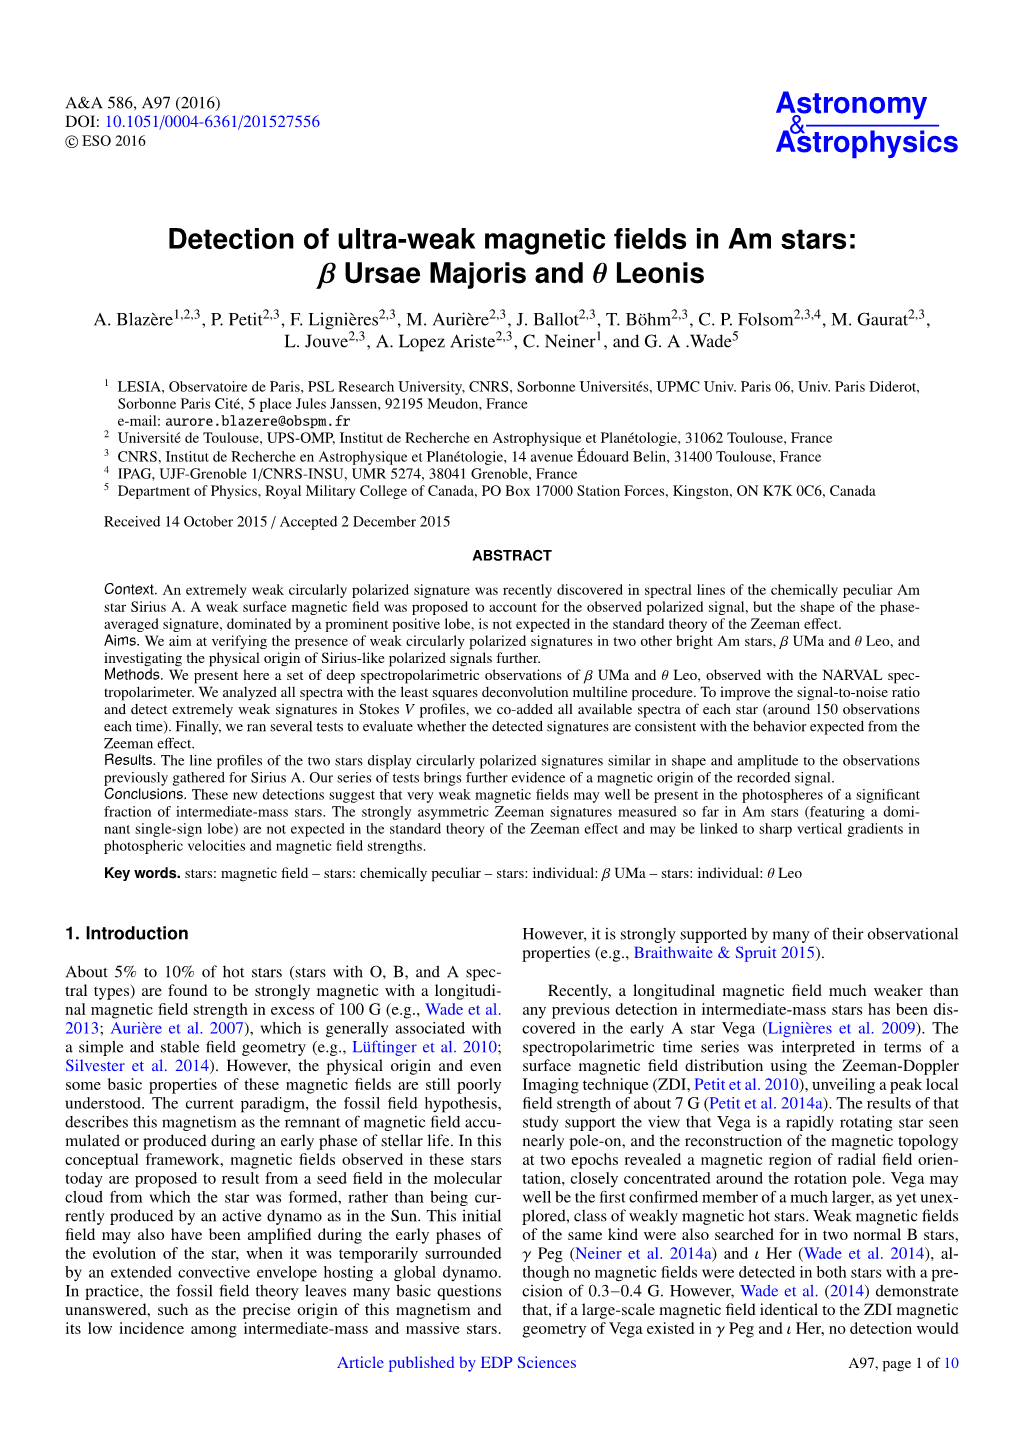 Detection of Ultra-Weak Magnetic Fields in Am Stars